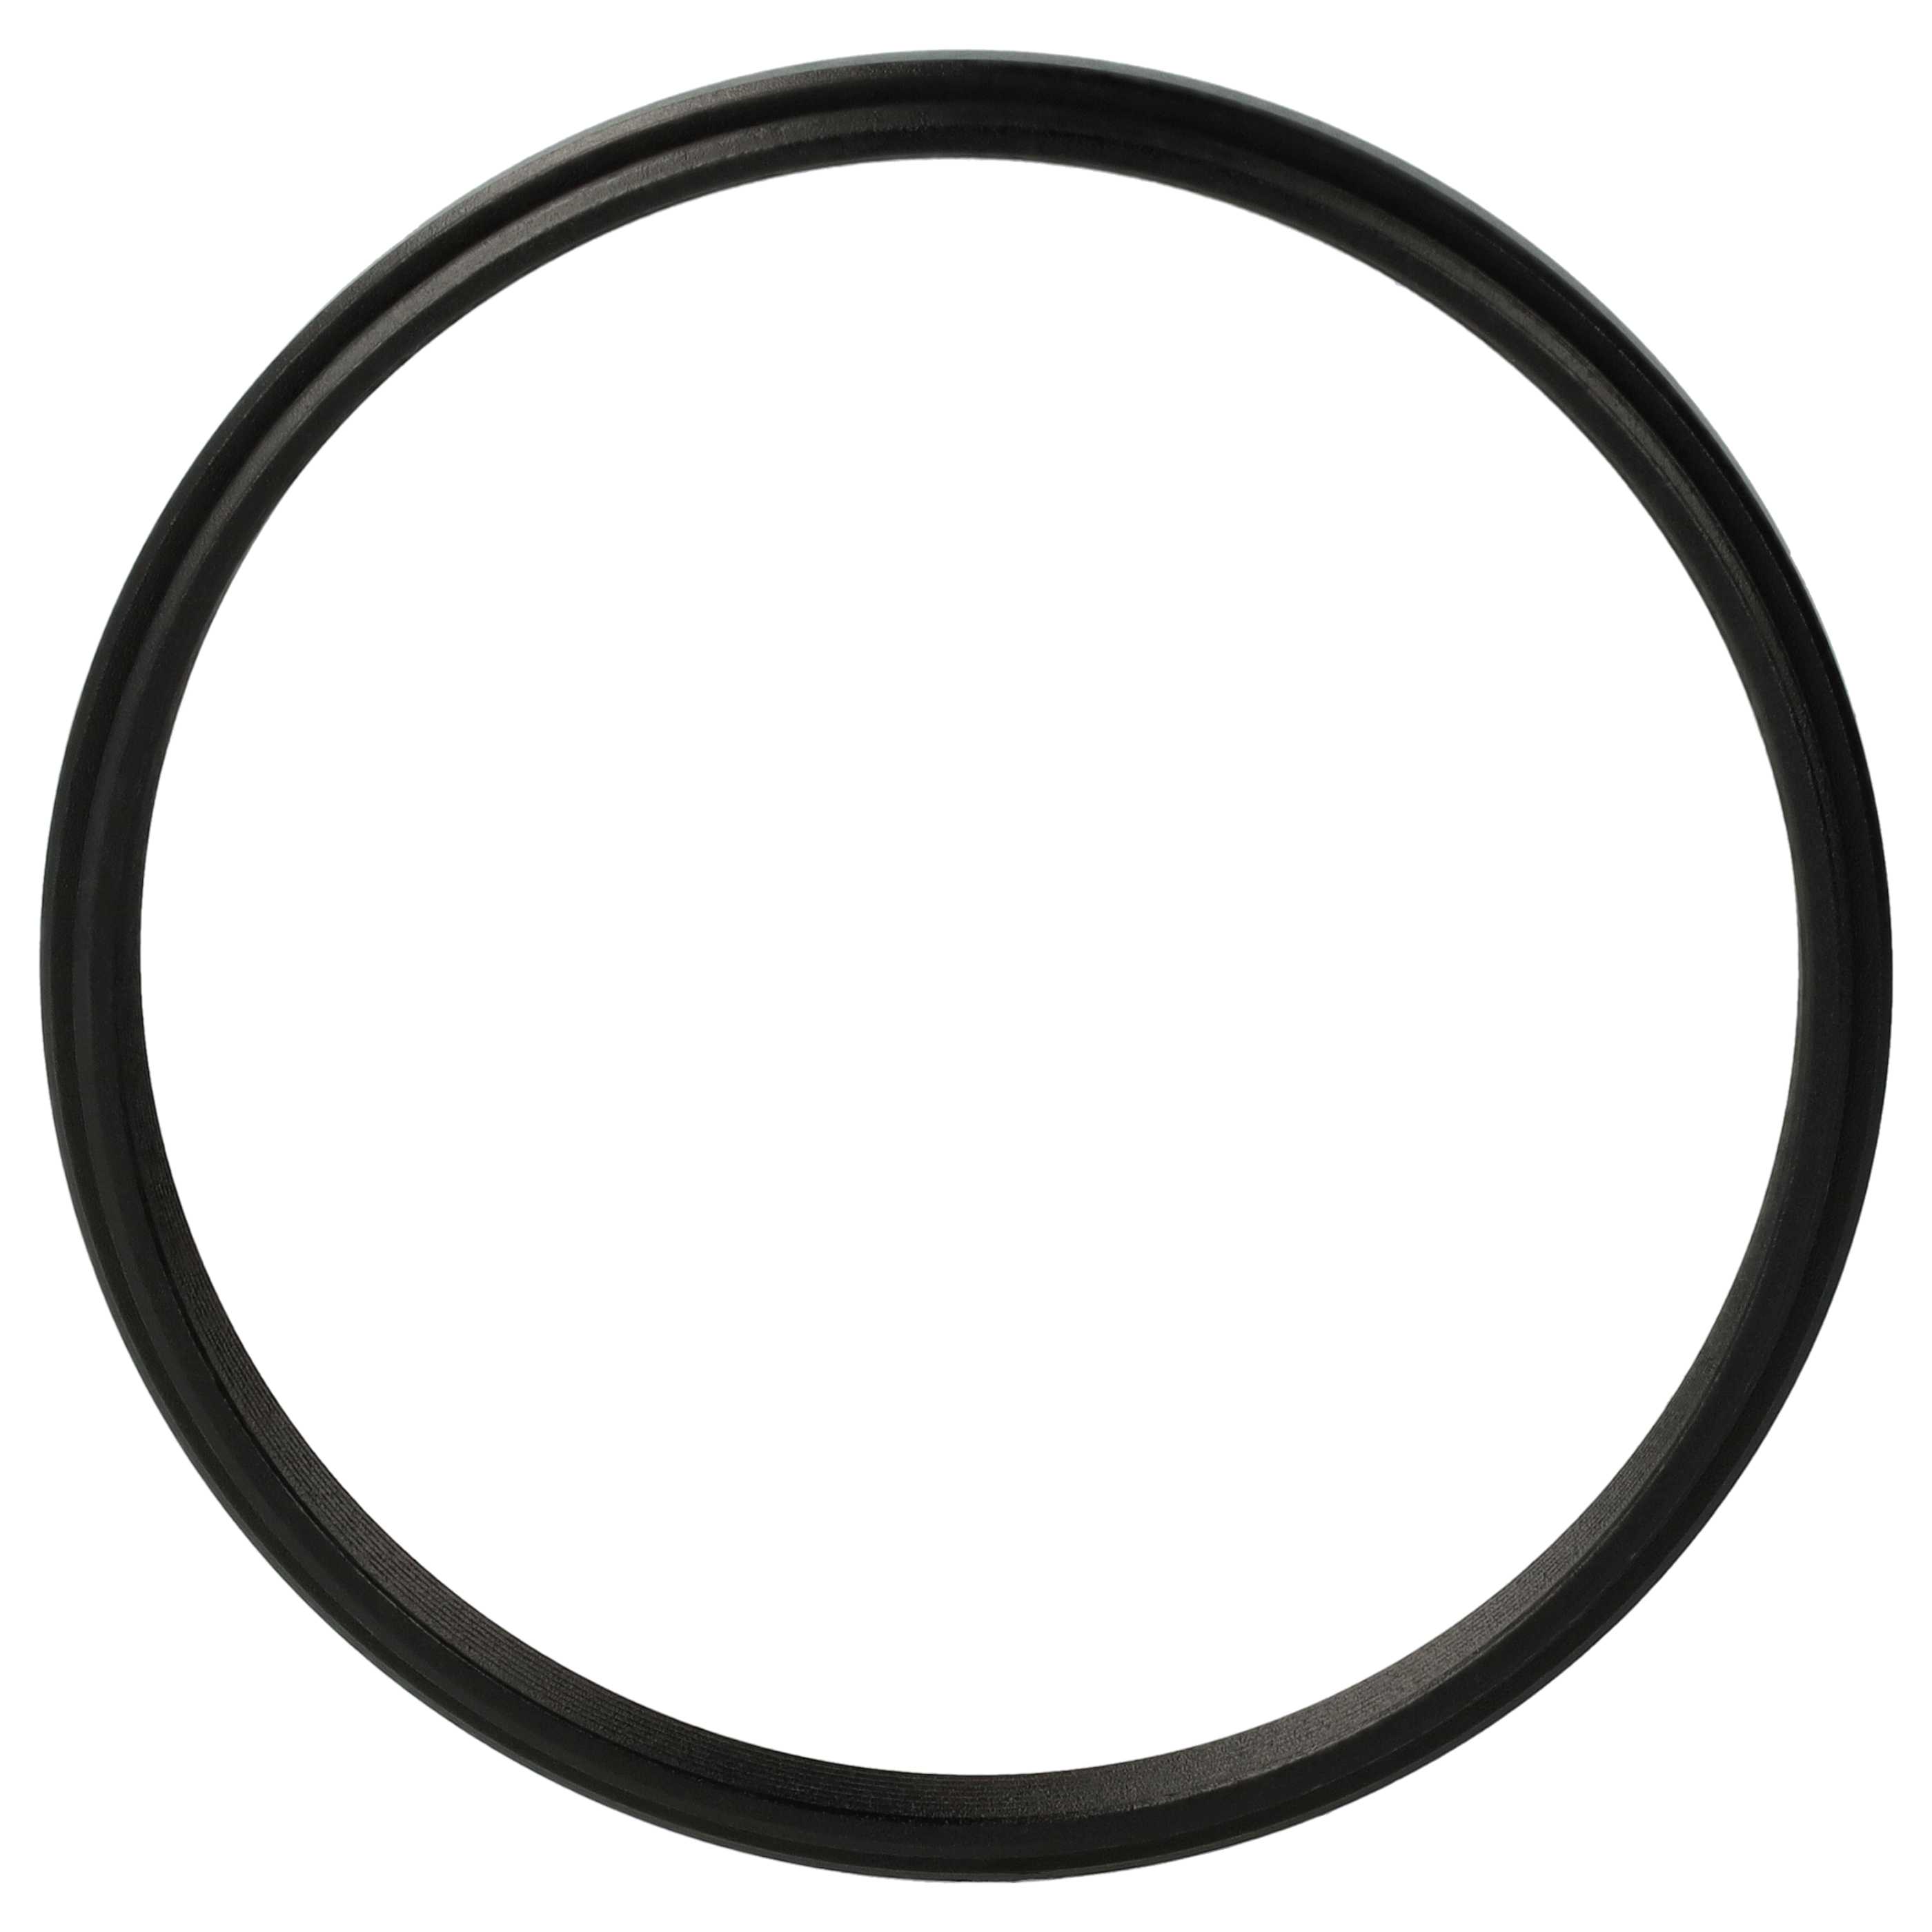 Redukcja filtrowa adapter Step-Down 58 mm - 55 mm pasująca do obiektywu - metal, czarny